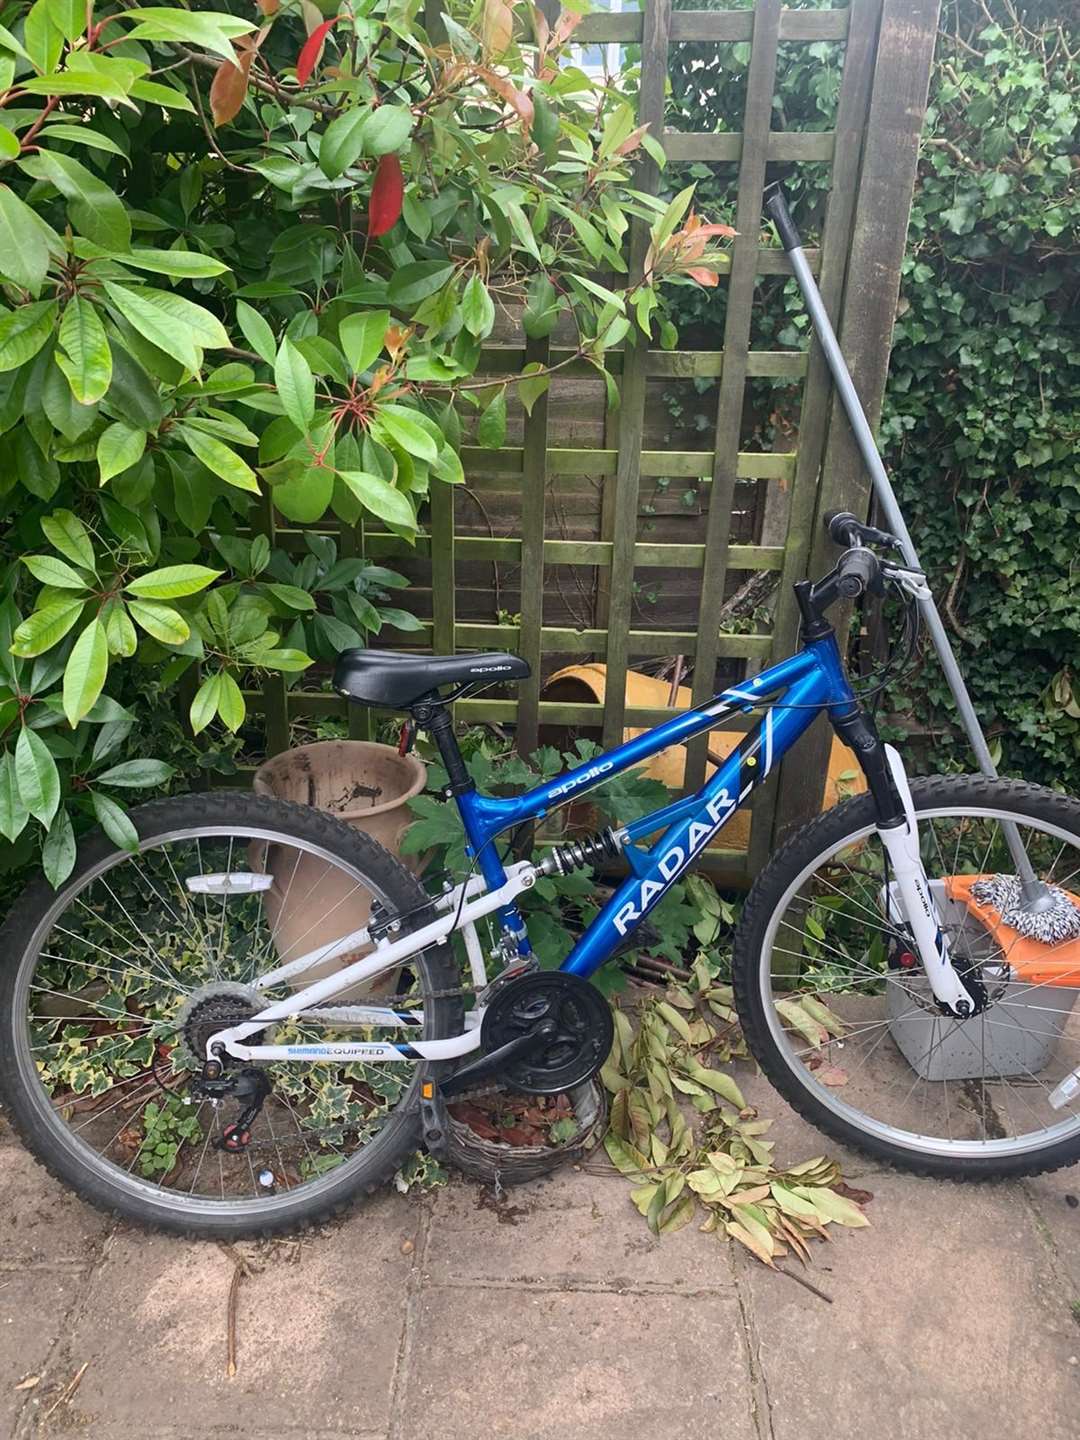 Tarang's bike was taken from outside Trokes News in Singlewell Road